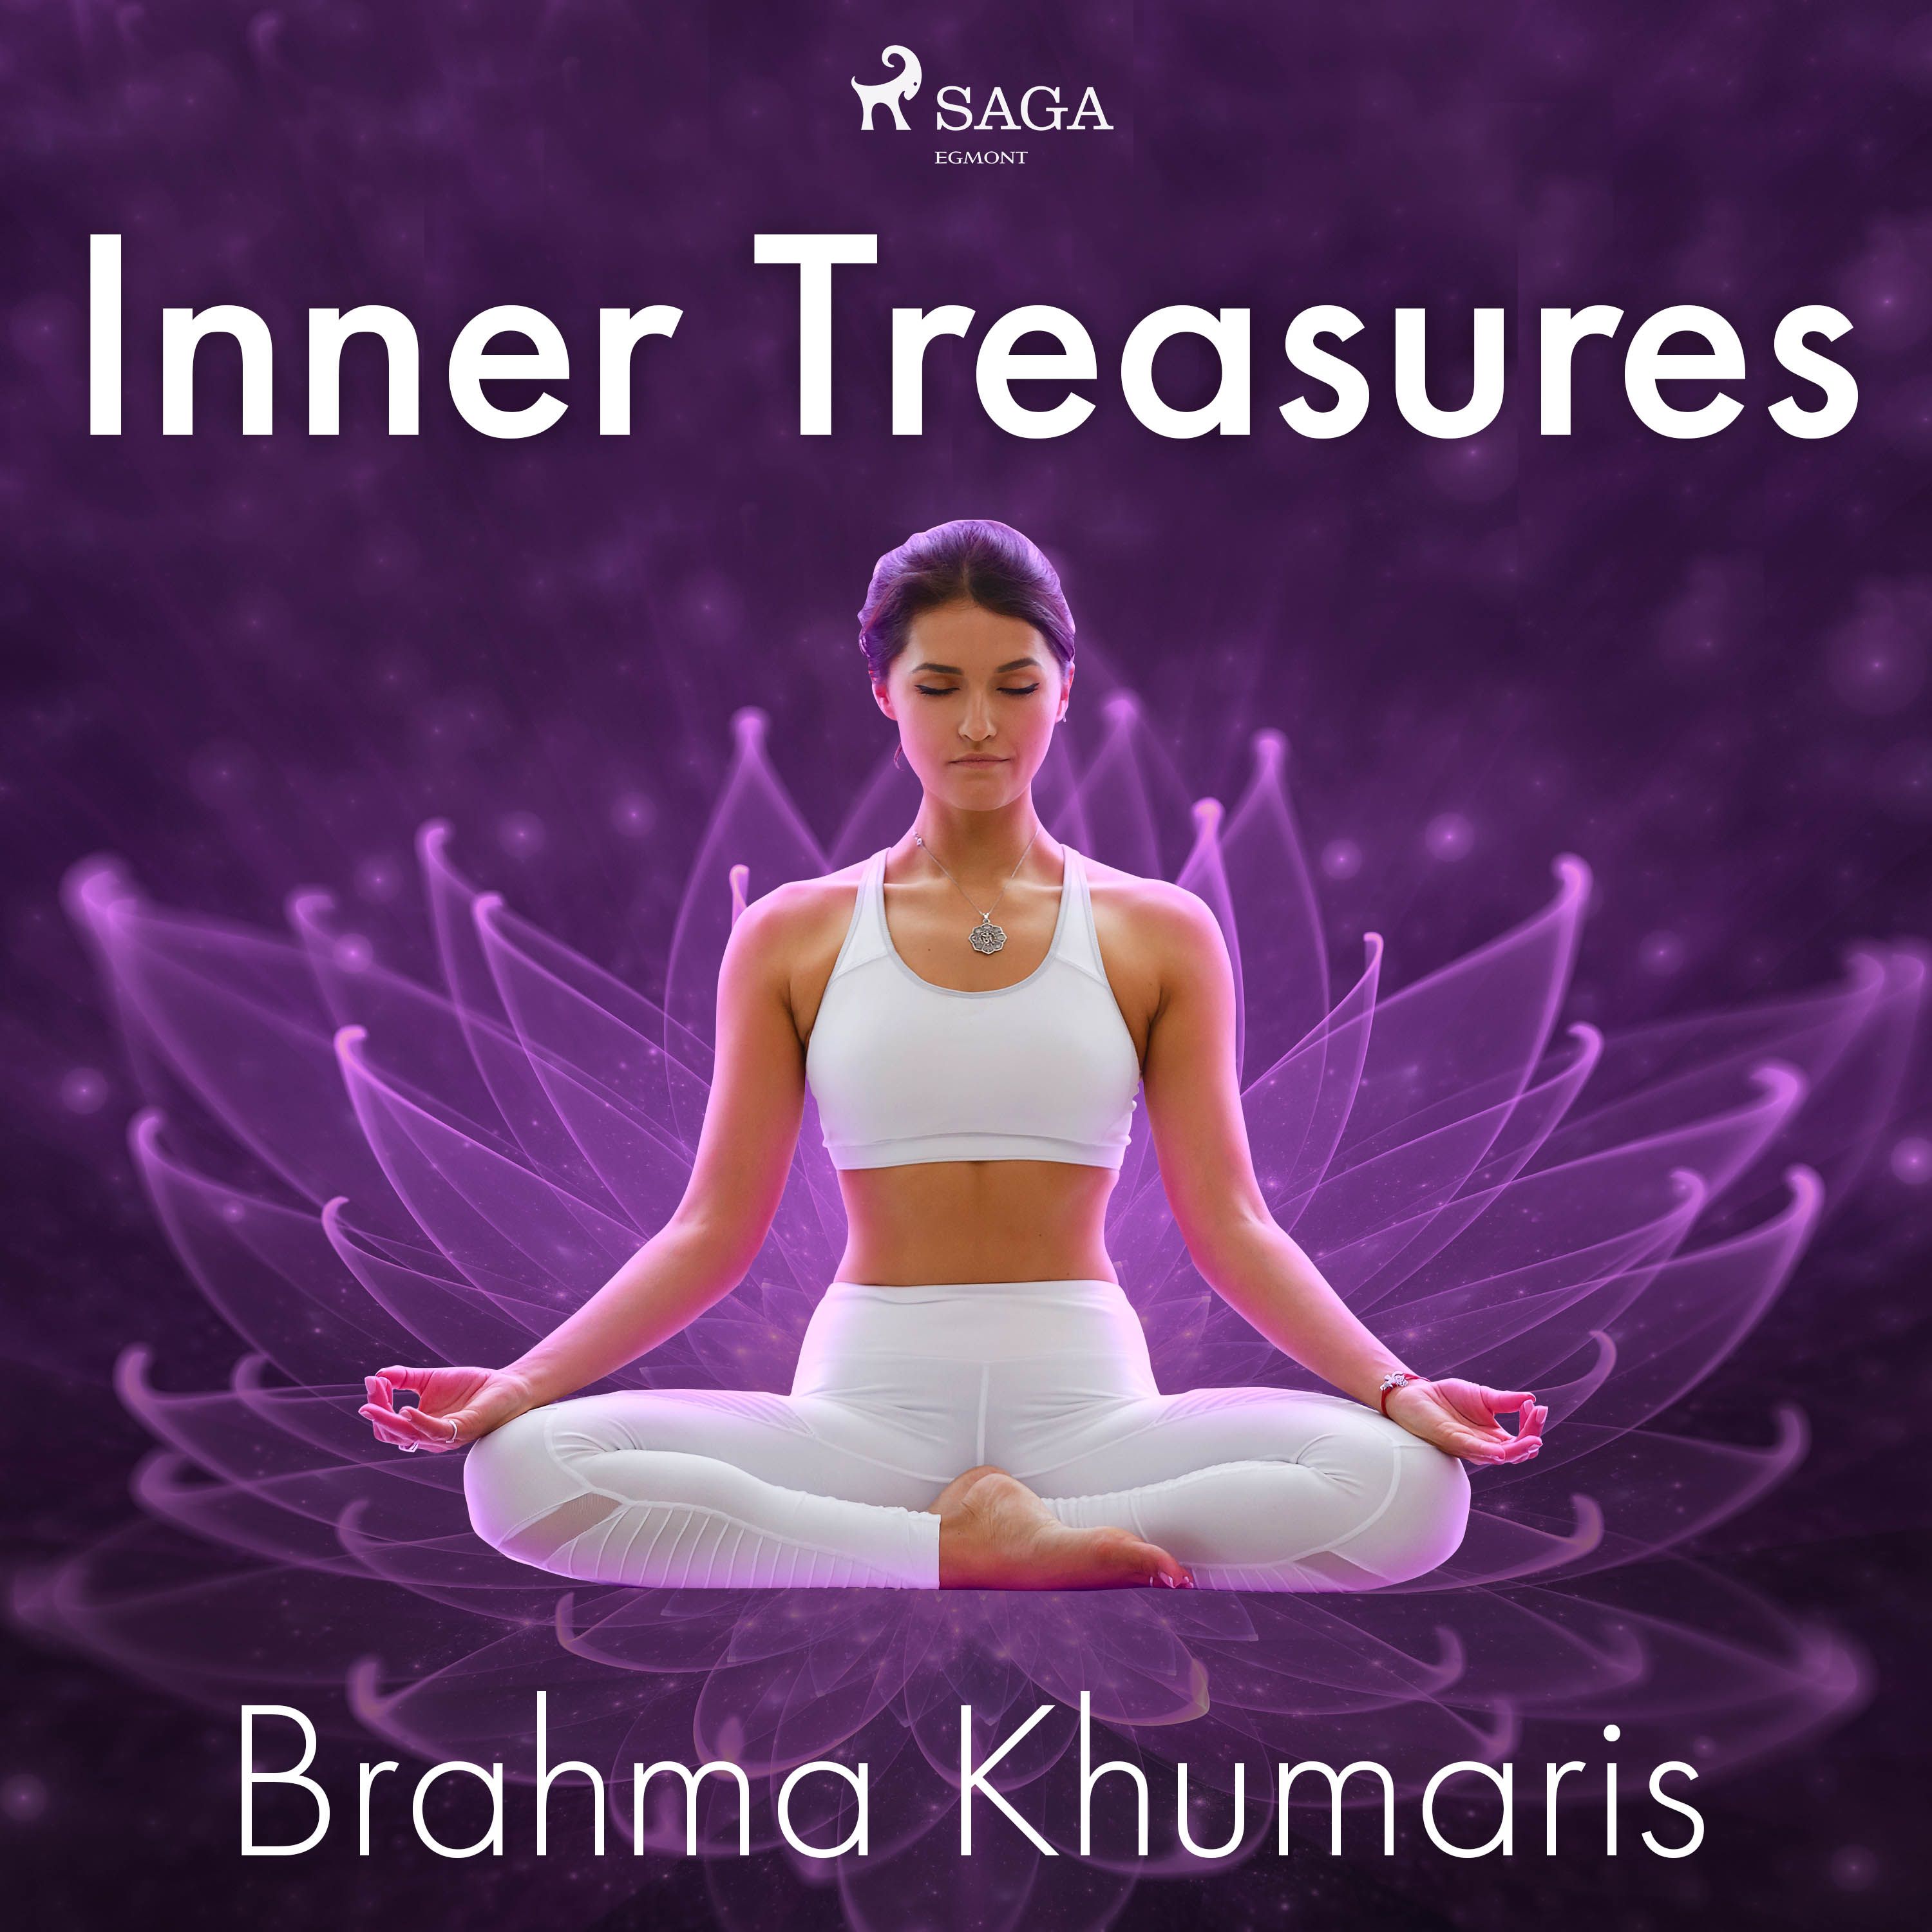 Inner Treasures, lydbog af Brahma Khumaris